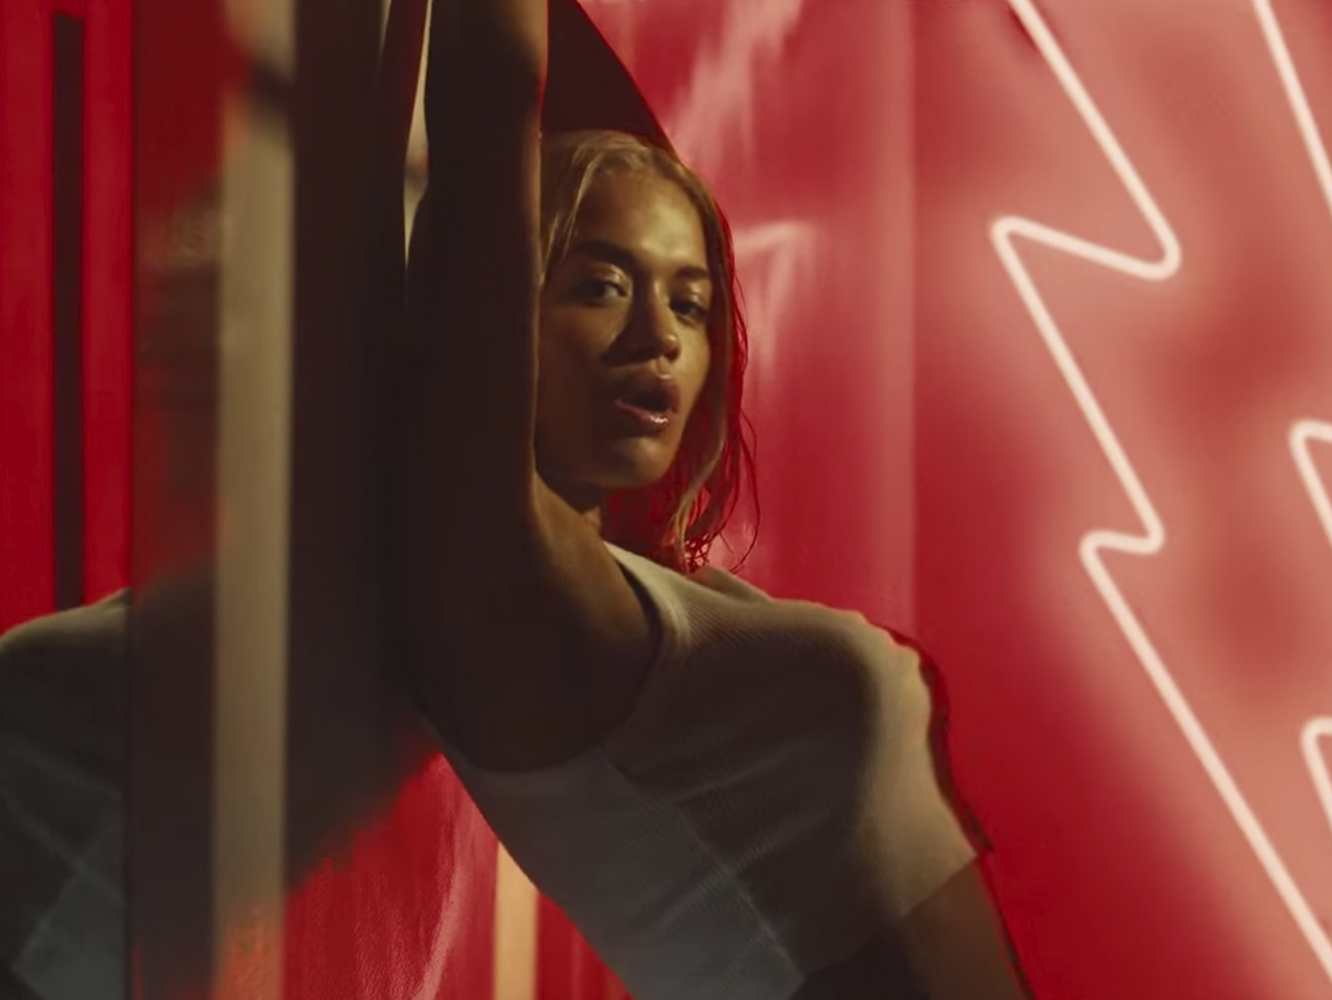  Rita Ora calienta, pero no cocina, en el vídeo de ‘Let You Love Me’